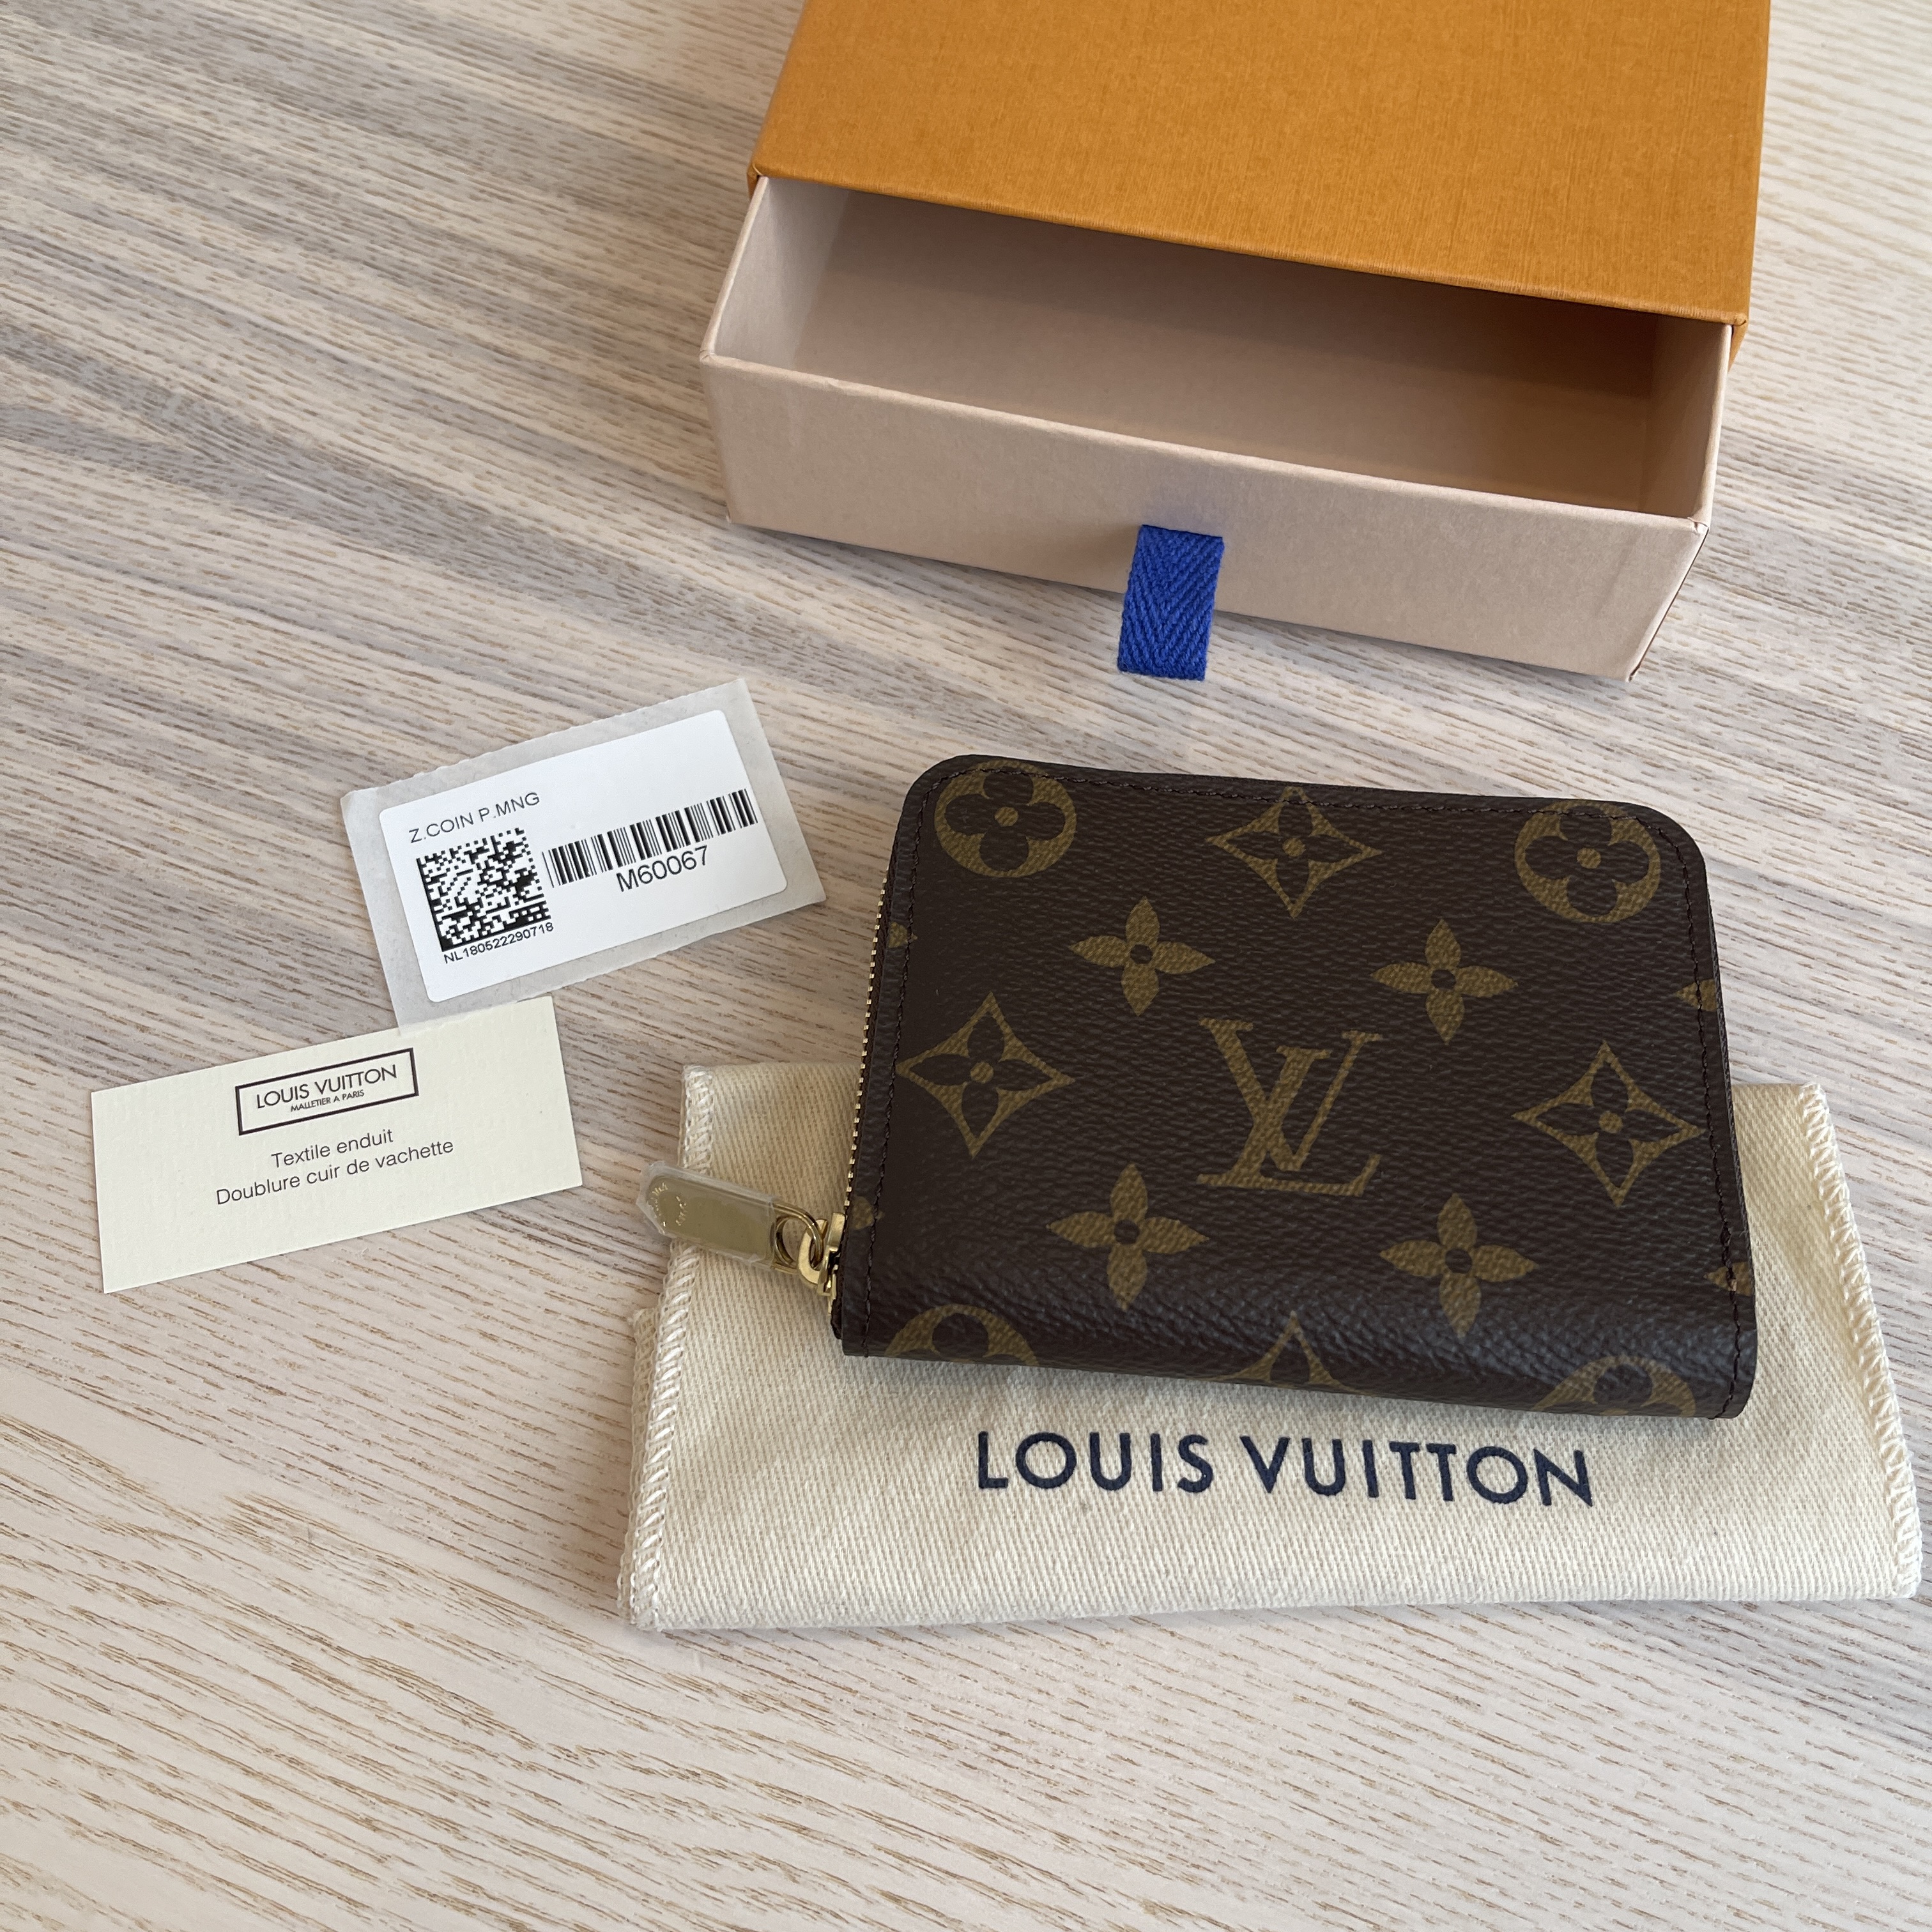 SOLD Louis Vuitton monogram wallet, excellent condition $550